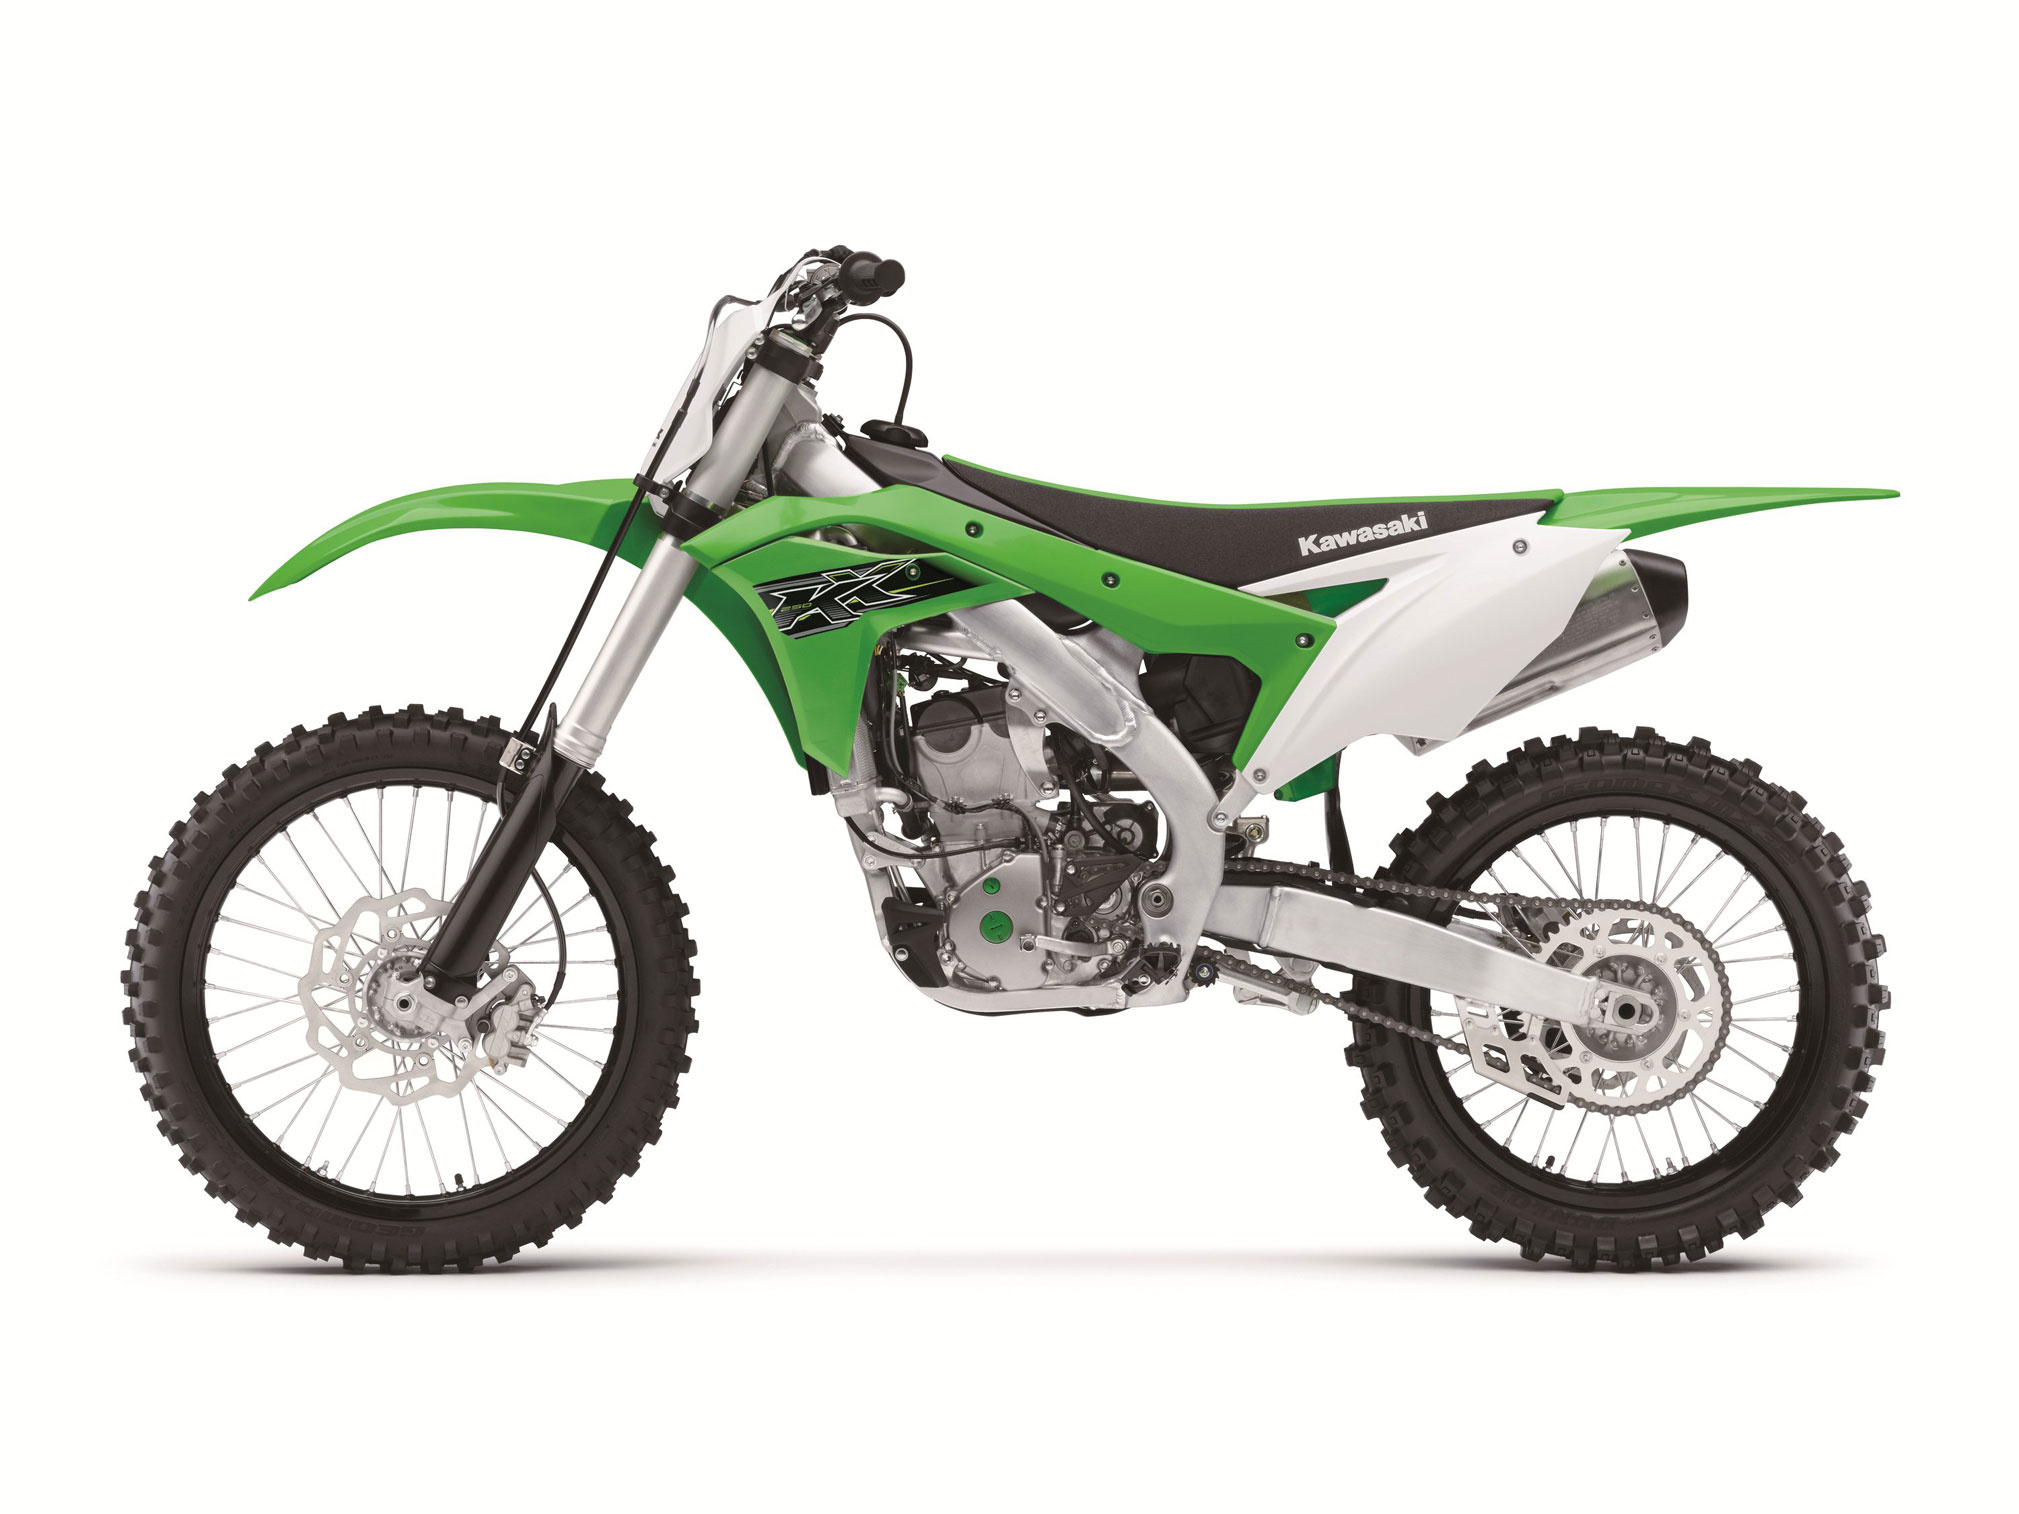 Kawasaki KX250, Auto guide, Total Motorcycle, 2019, 2020x1520 HD Desktop